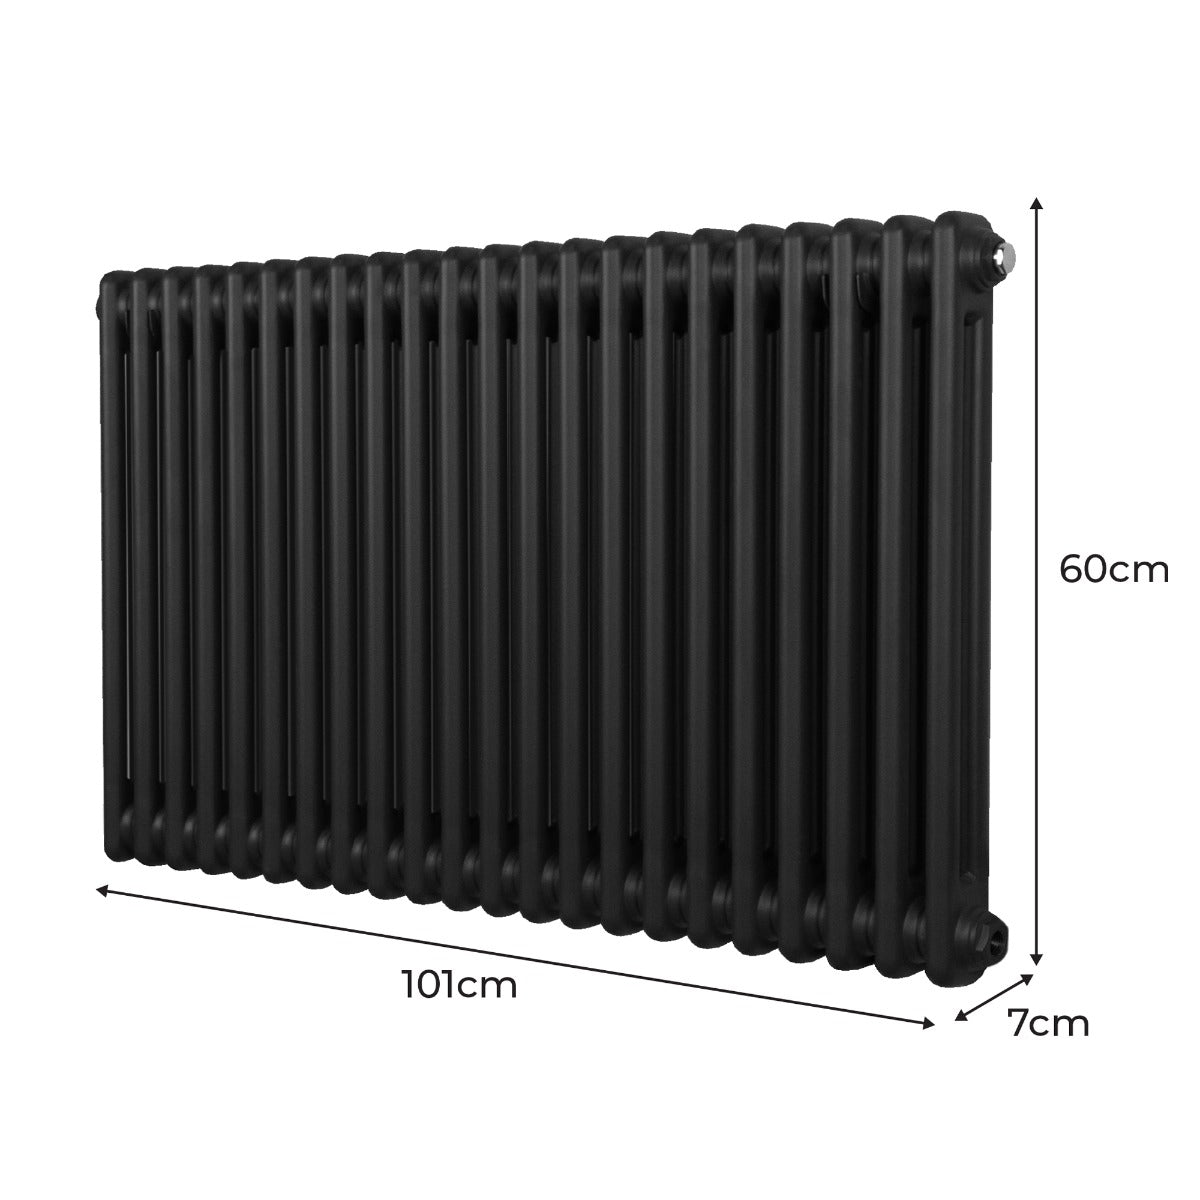 Radiateur Traditionnel à Double Colonne – 600 x 1012 mm – Noir